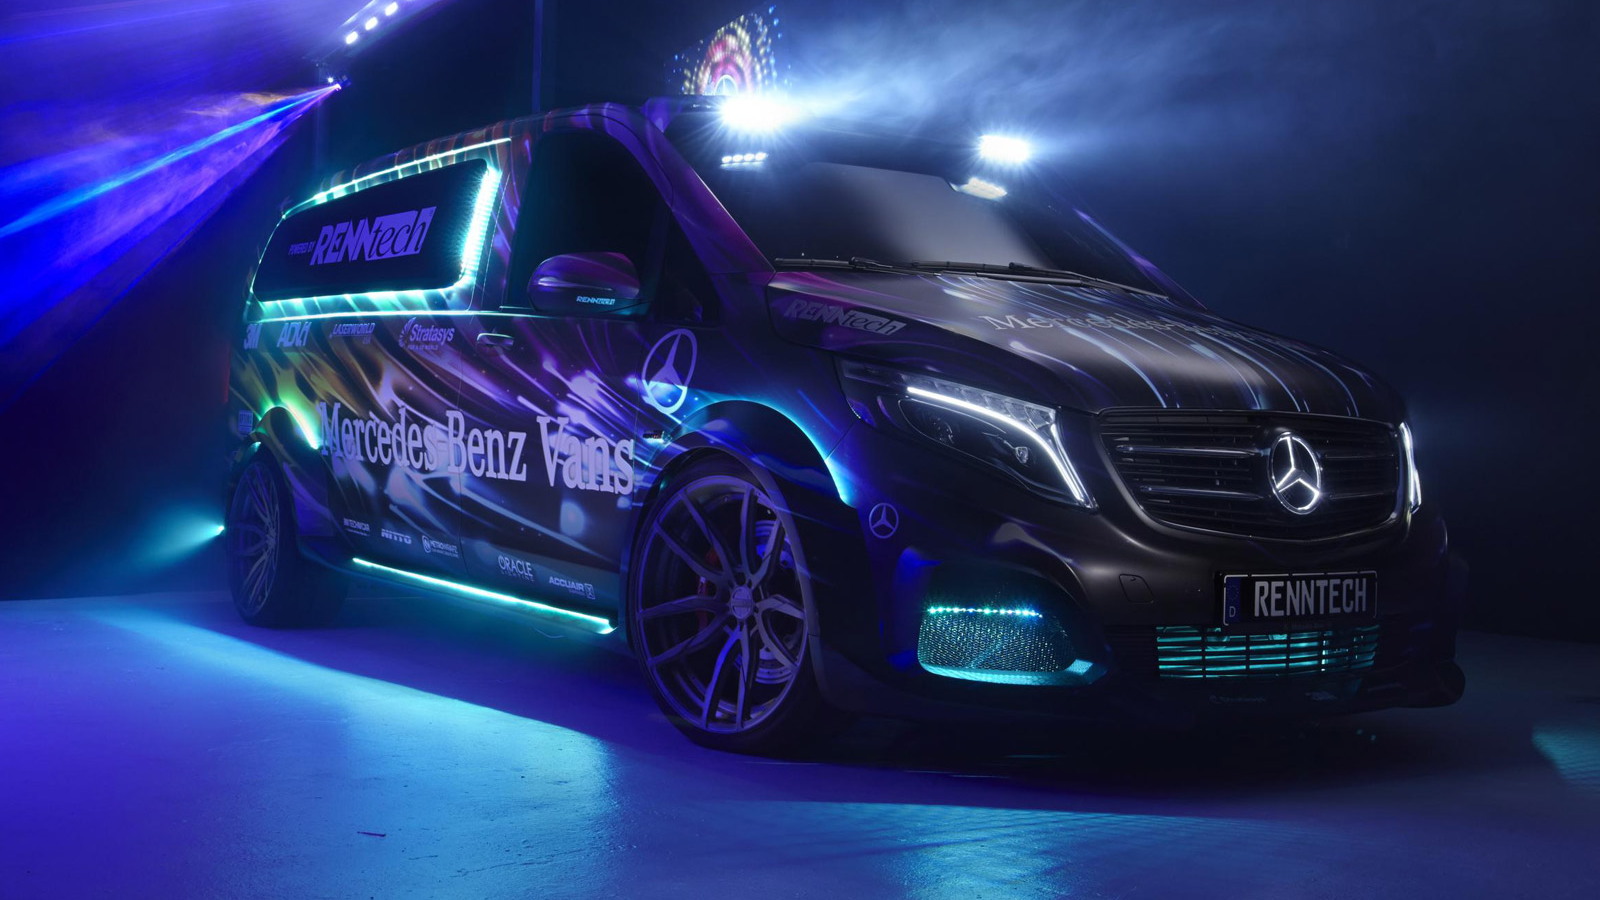 Mercedes-Benz Metris Party/DJ Van by RENNtech, 2014 SEMA show